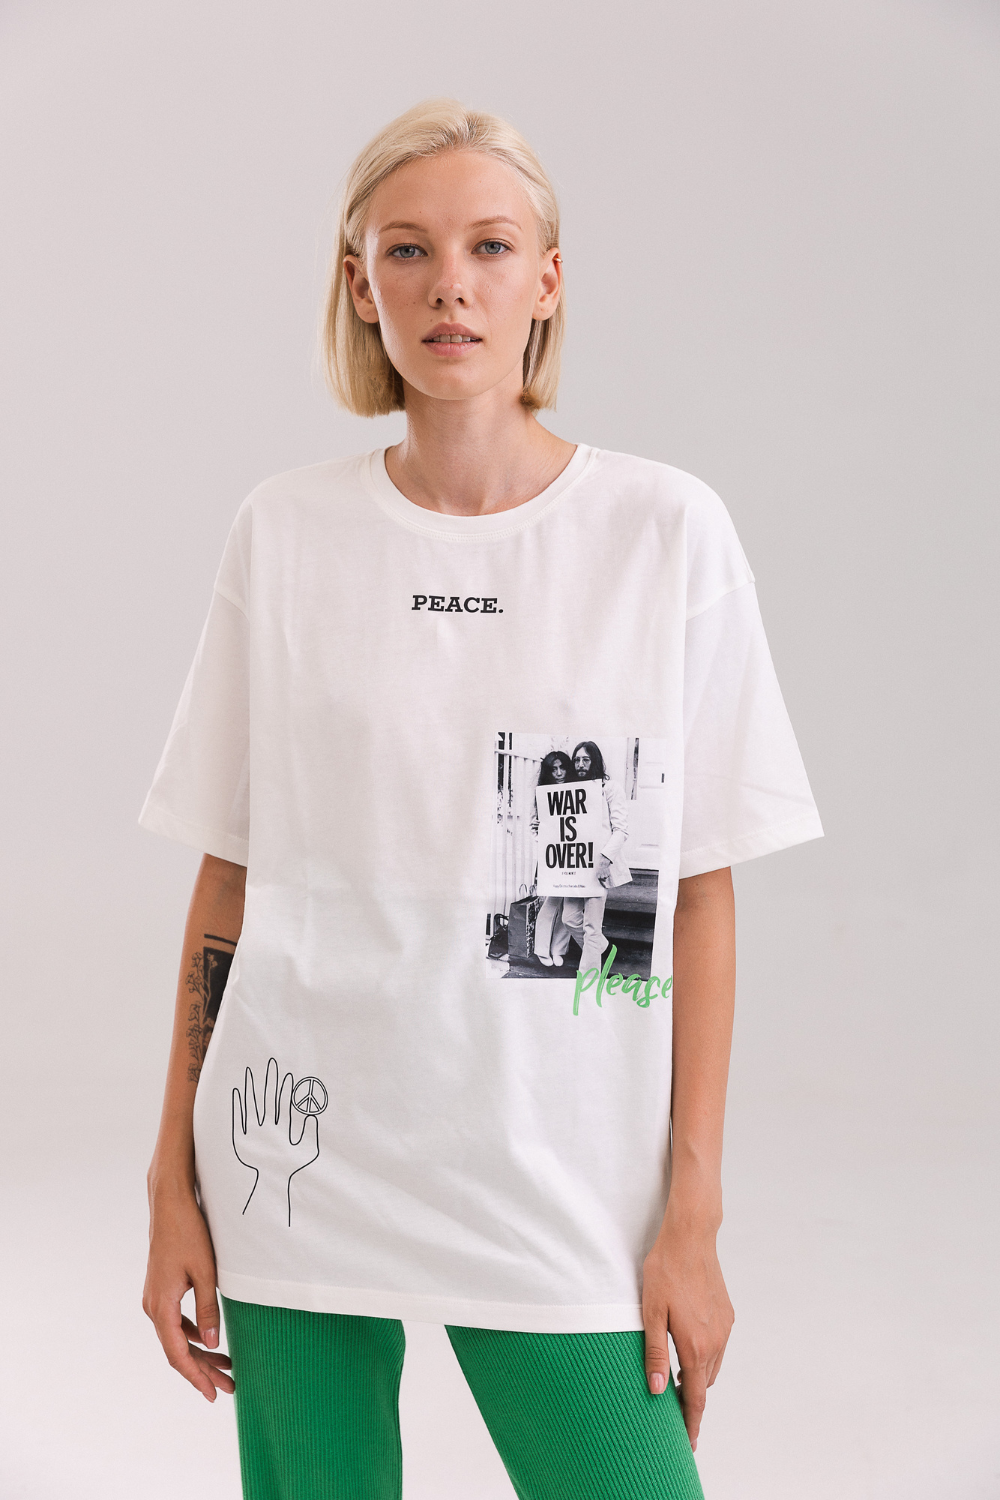 Tričko s potiskem - PEACE John Lennon (Adamská) 1185